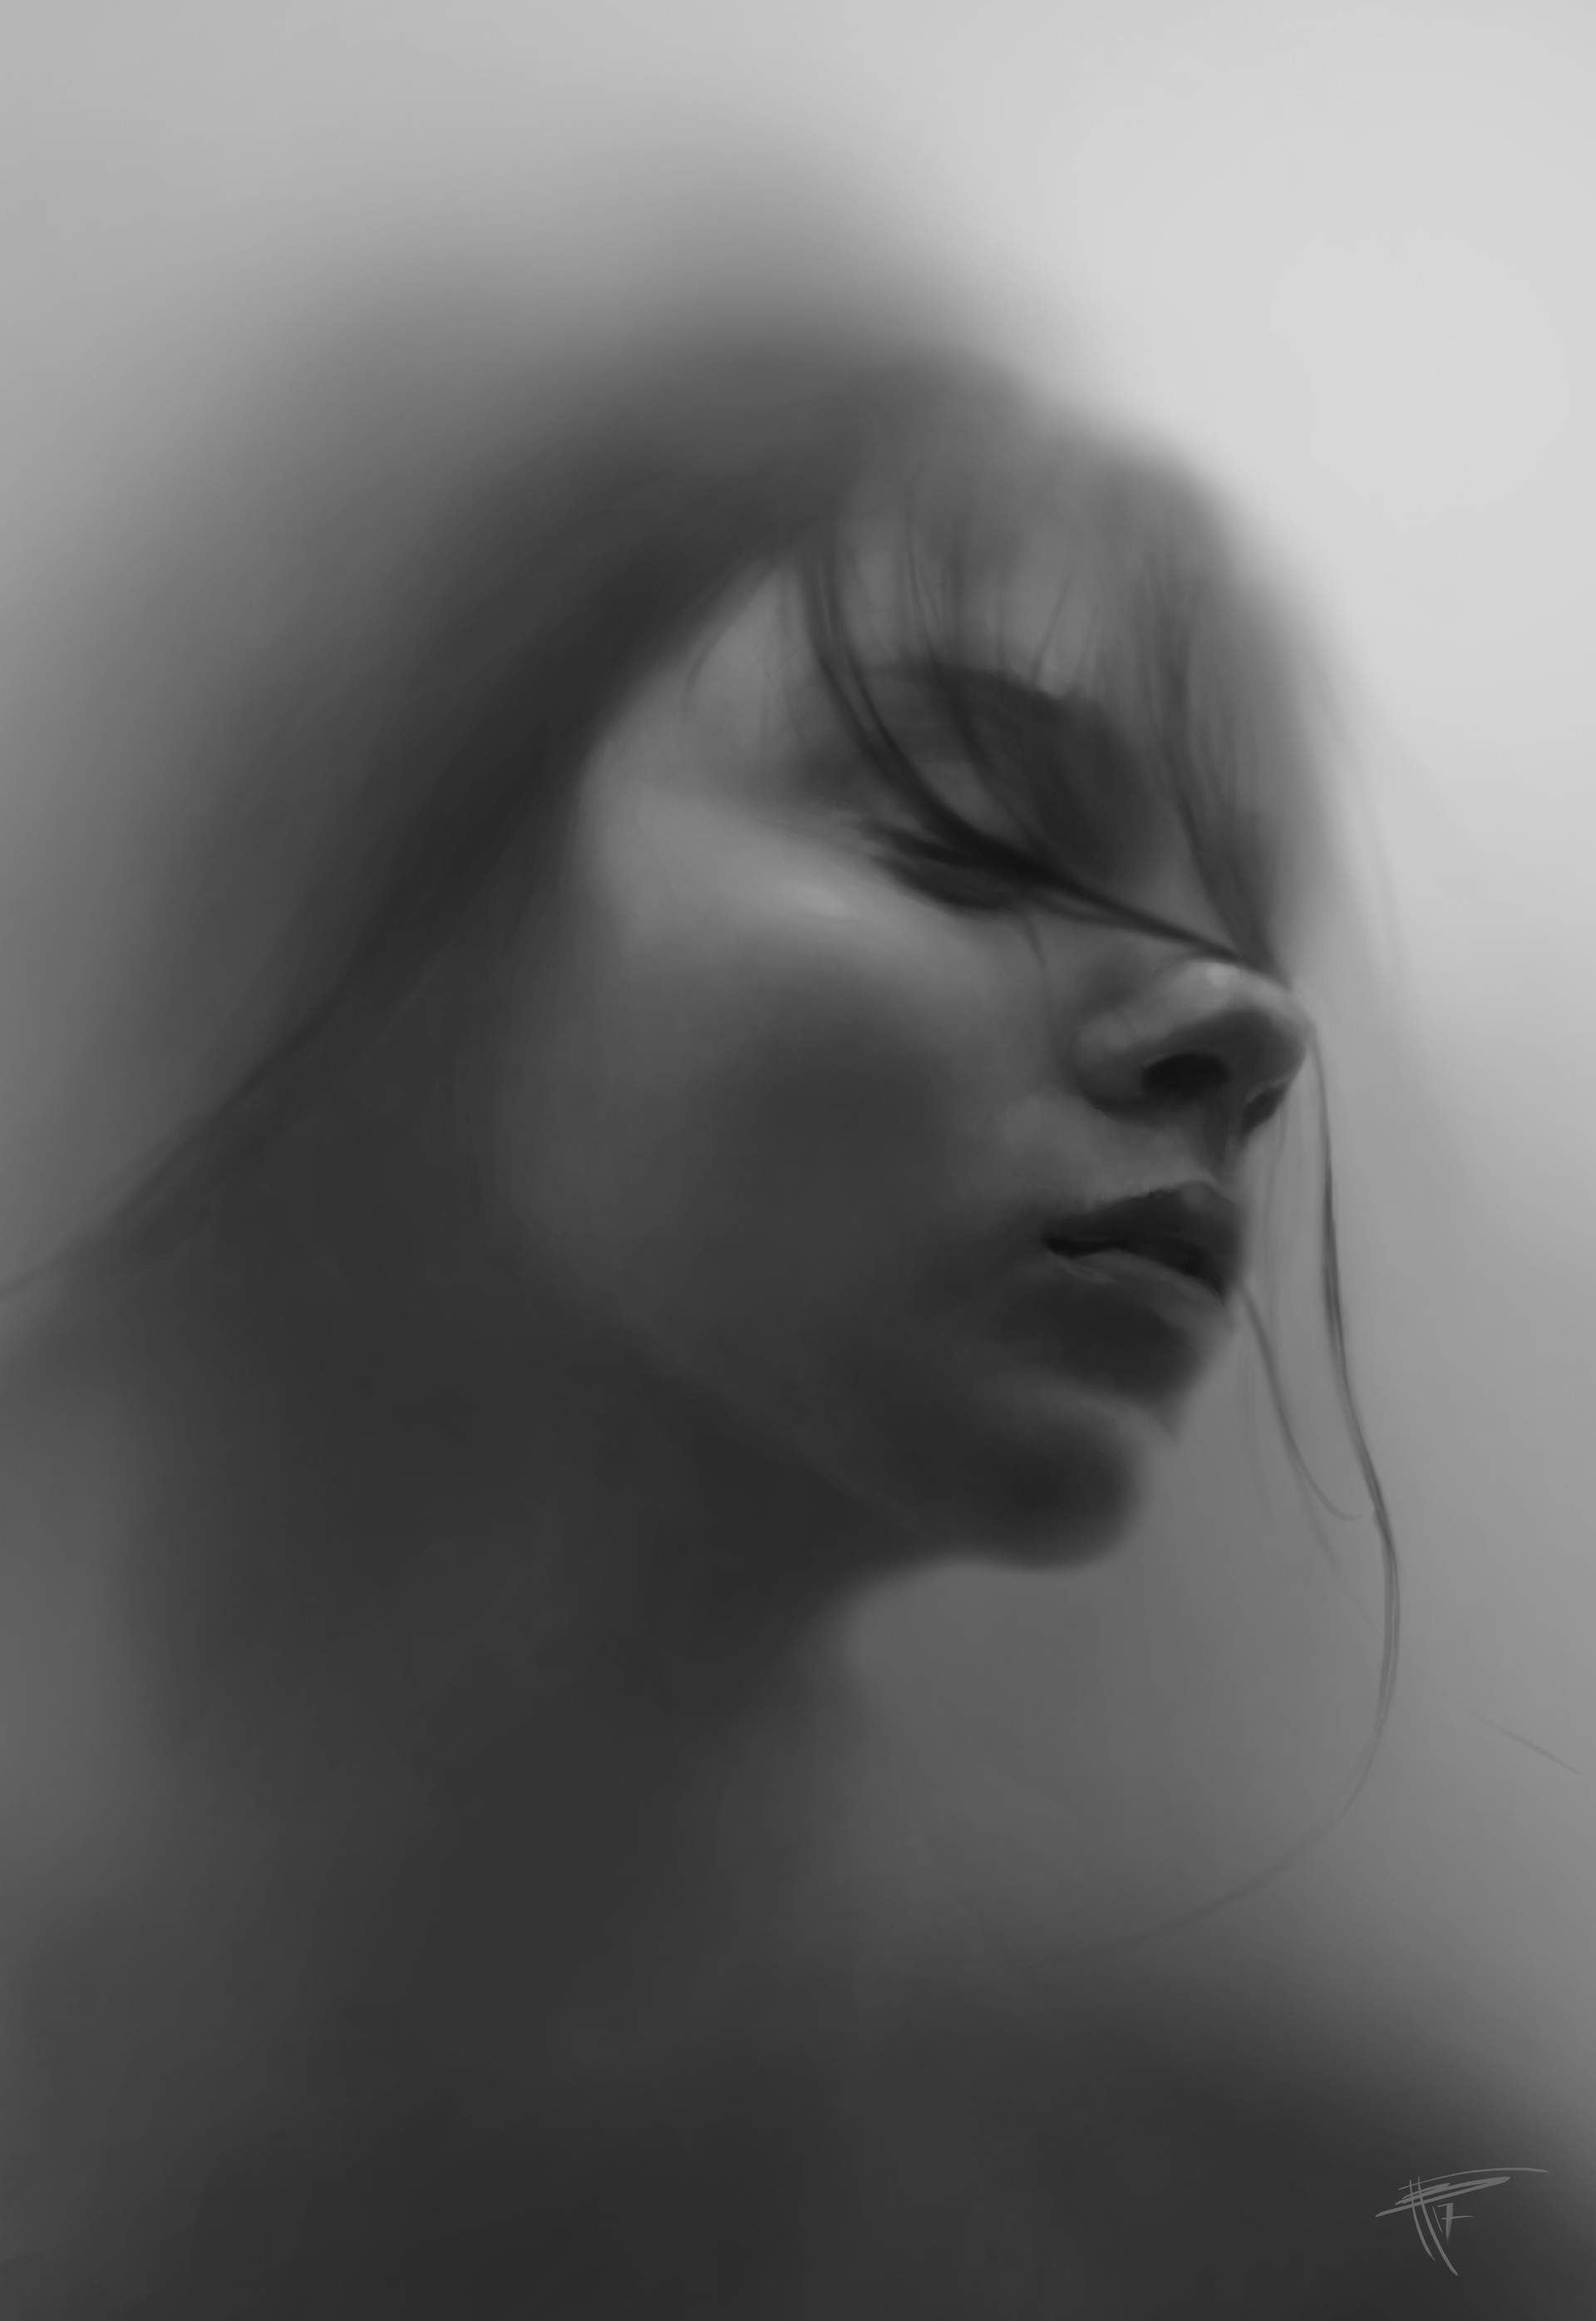 Картинка плачущей души. Девушка в тумане. Женский силуэт в тумане. Размытый портрет. Размытый силуэт девушки.